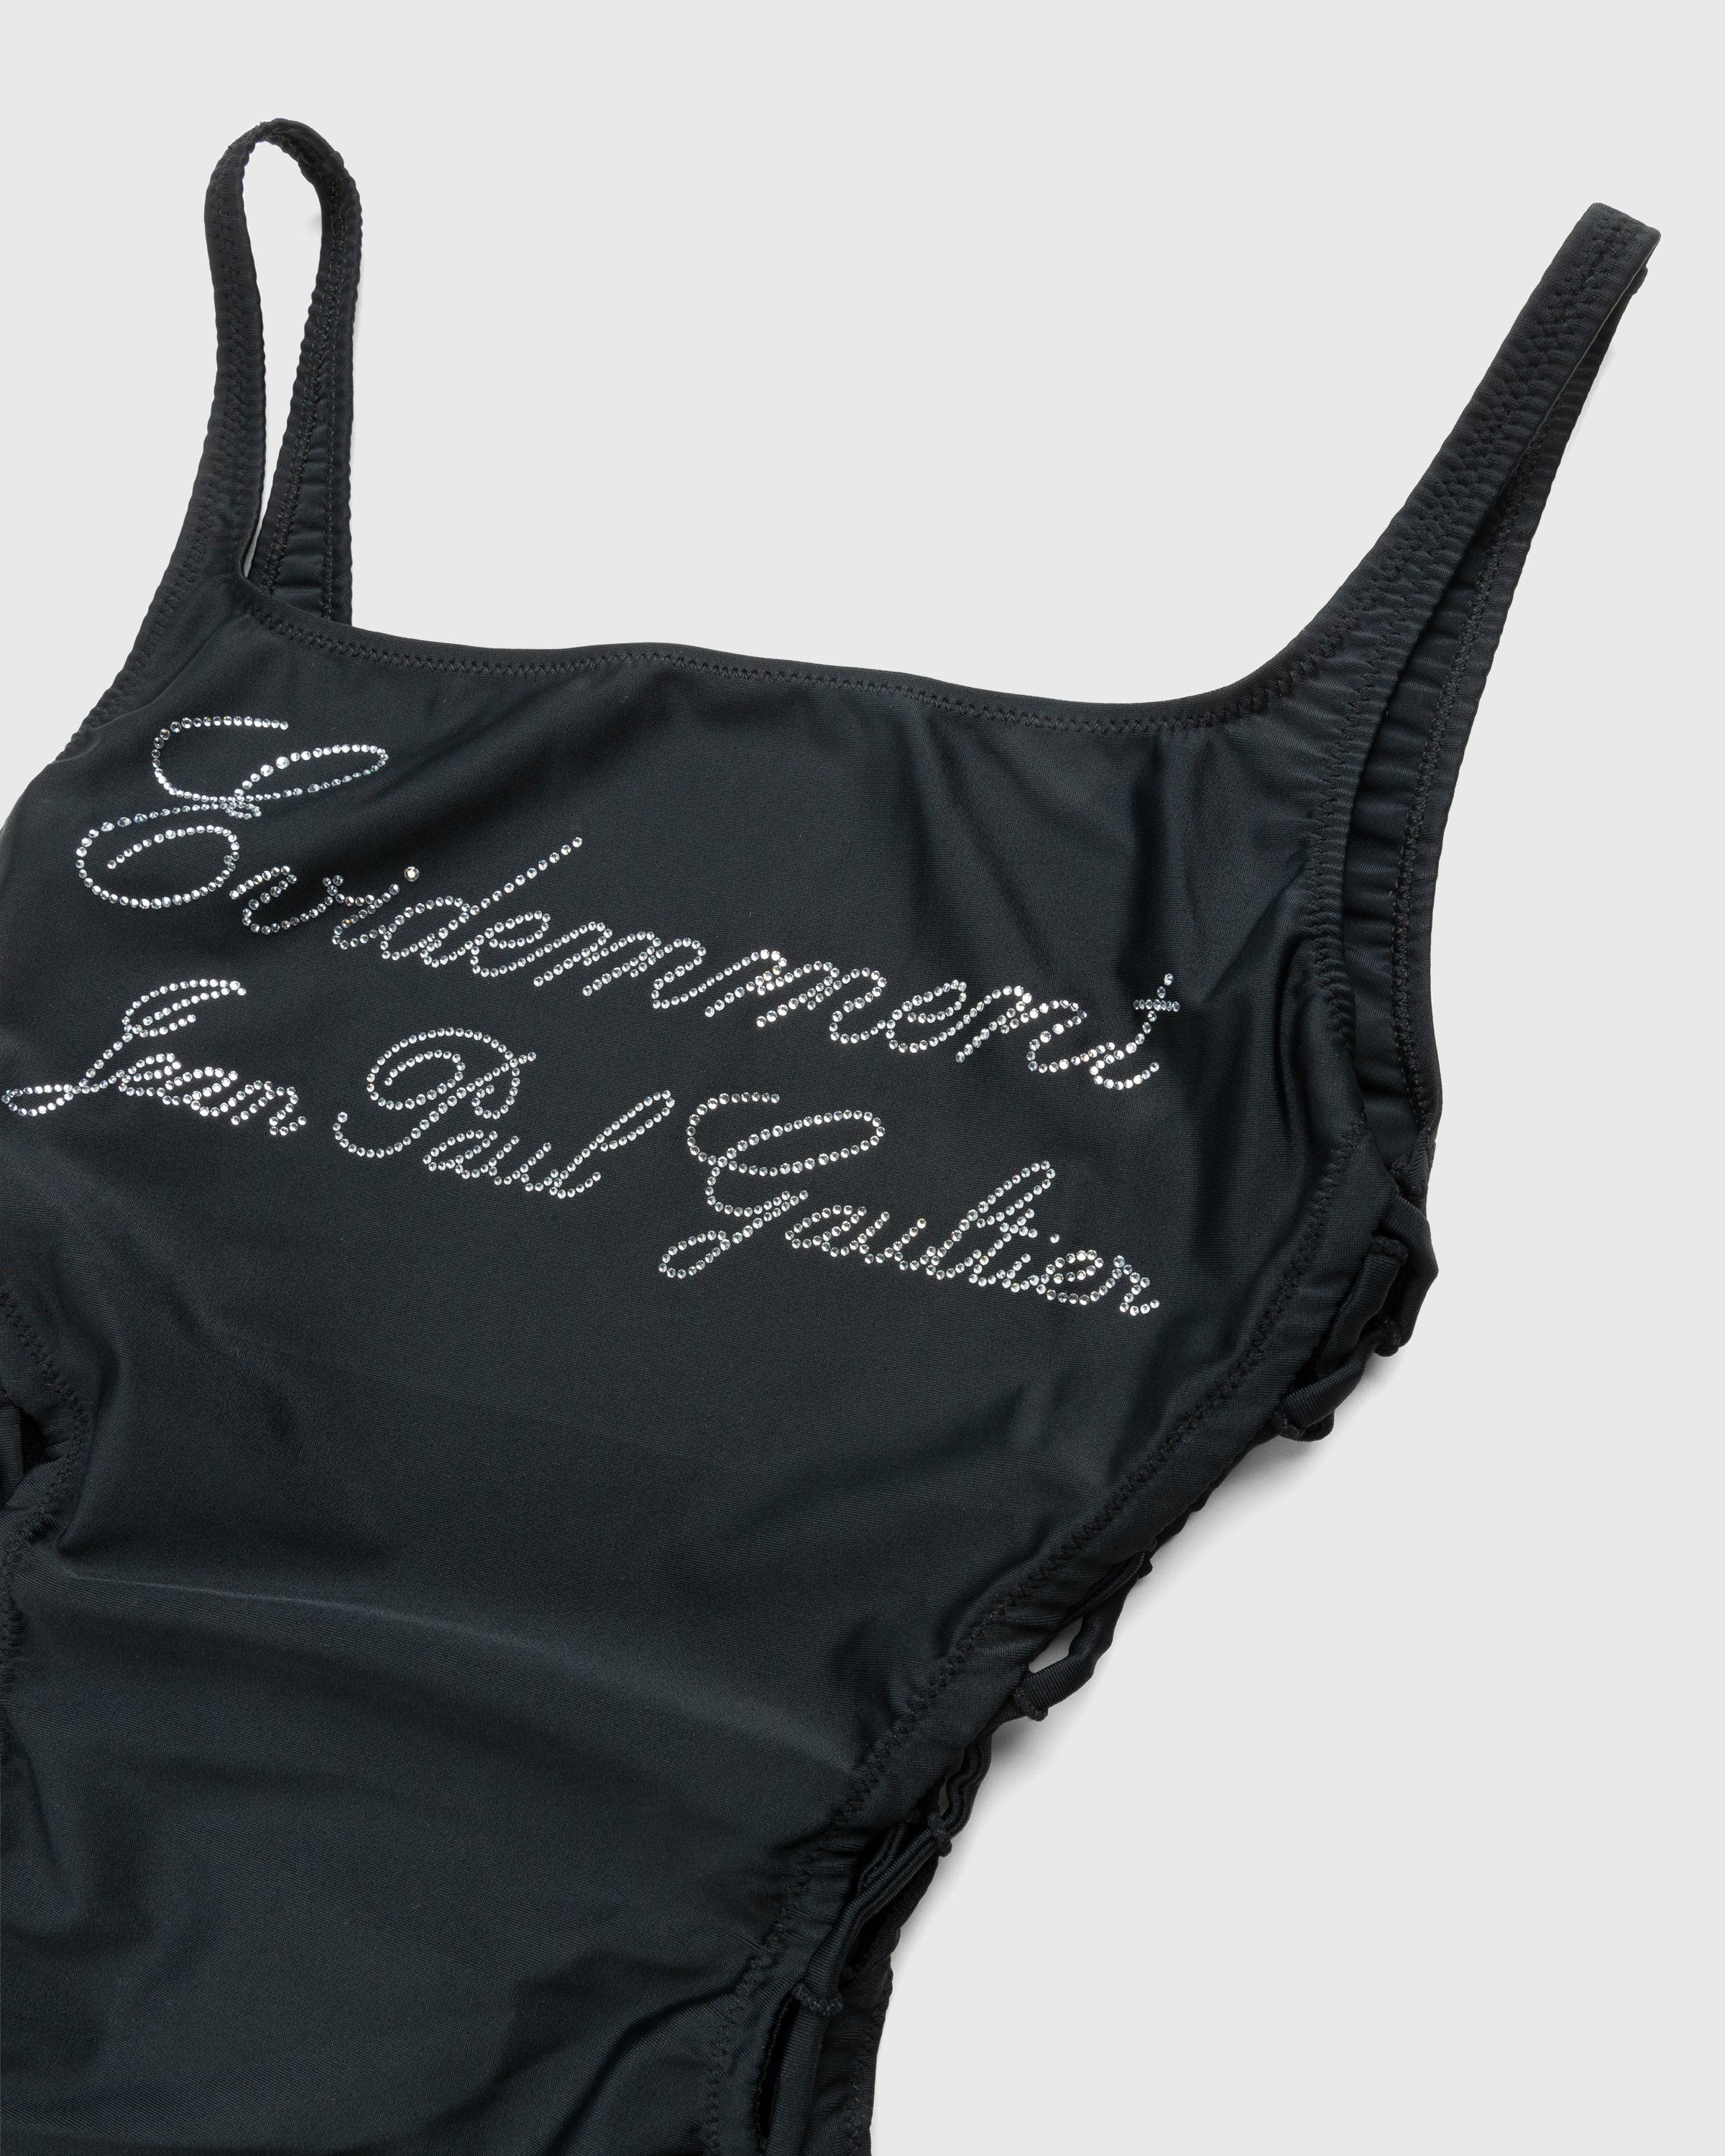 Jean Paul Gaultier - Évidemment Swimsuit Black - Clothing - Black - Image 3